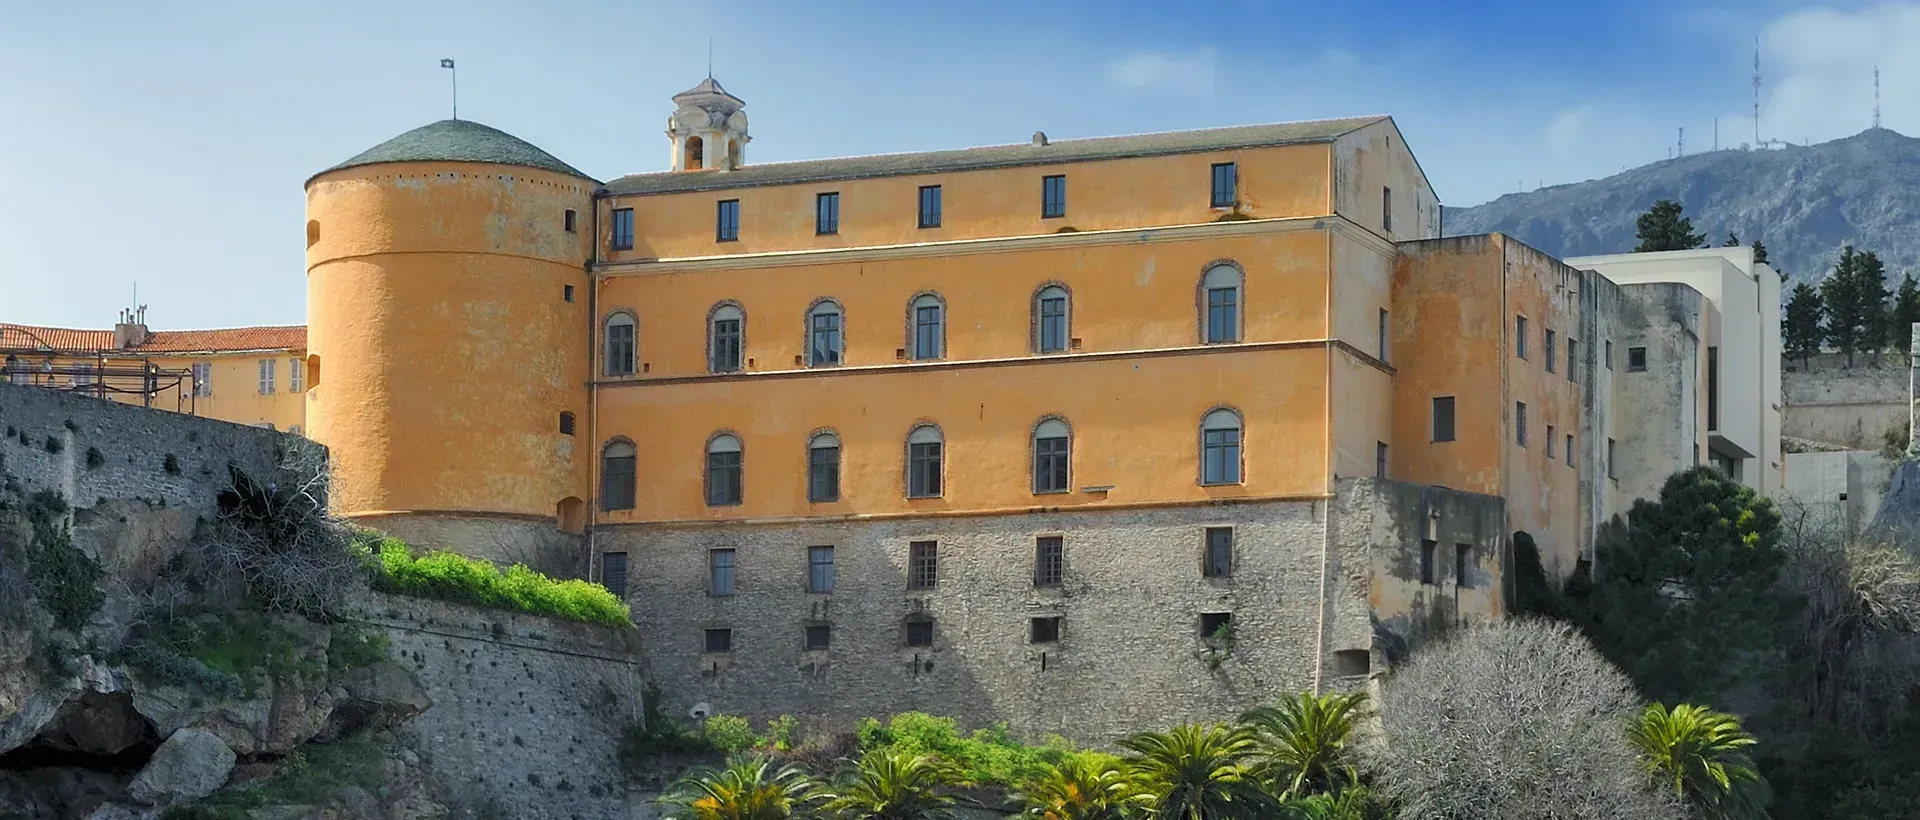 Historical Tour of Bastia